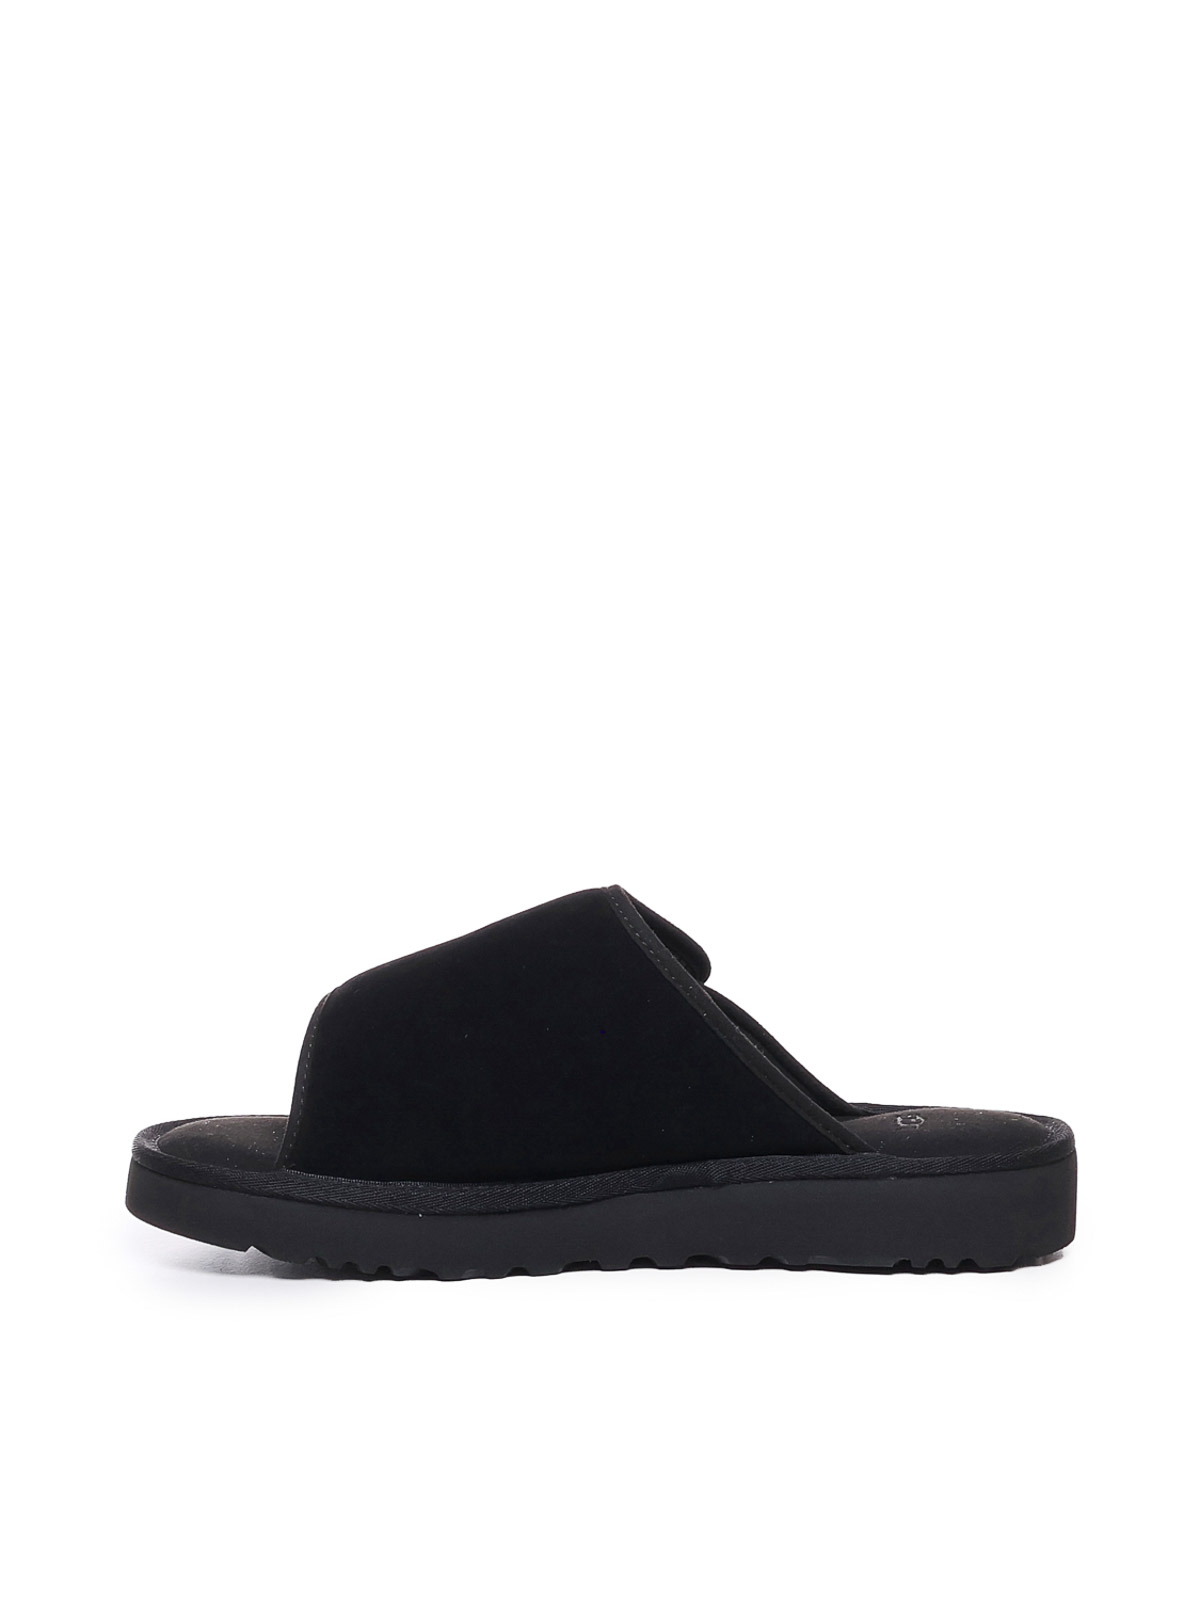 Shop Ugg Sandals In Negro